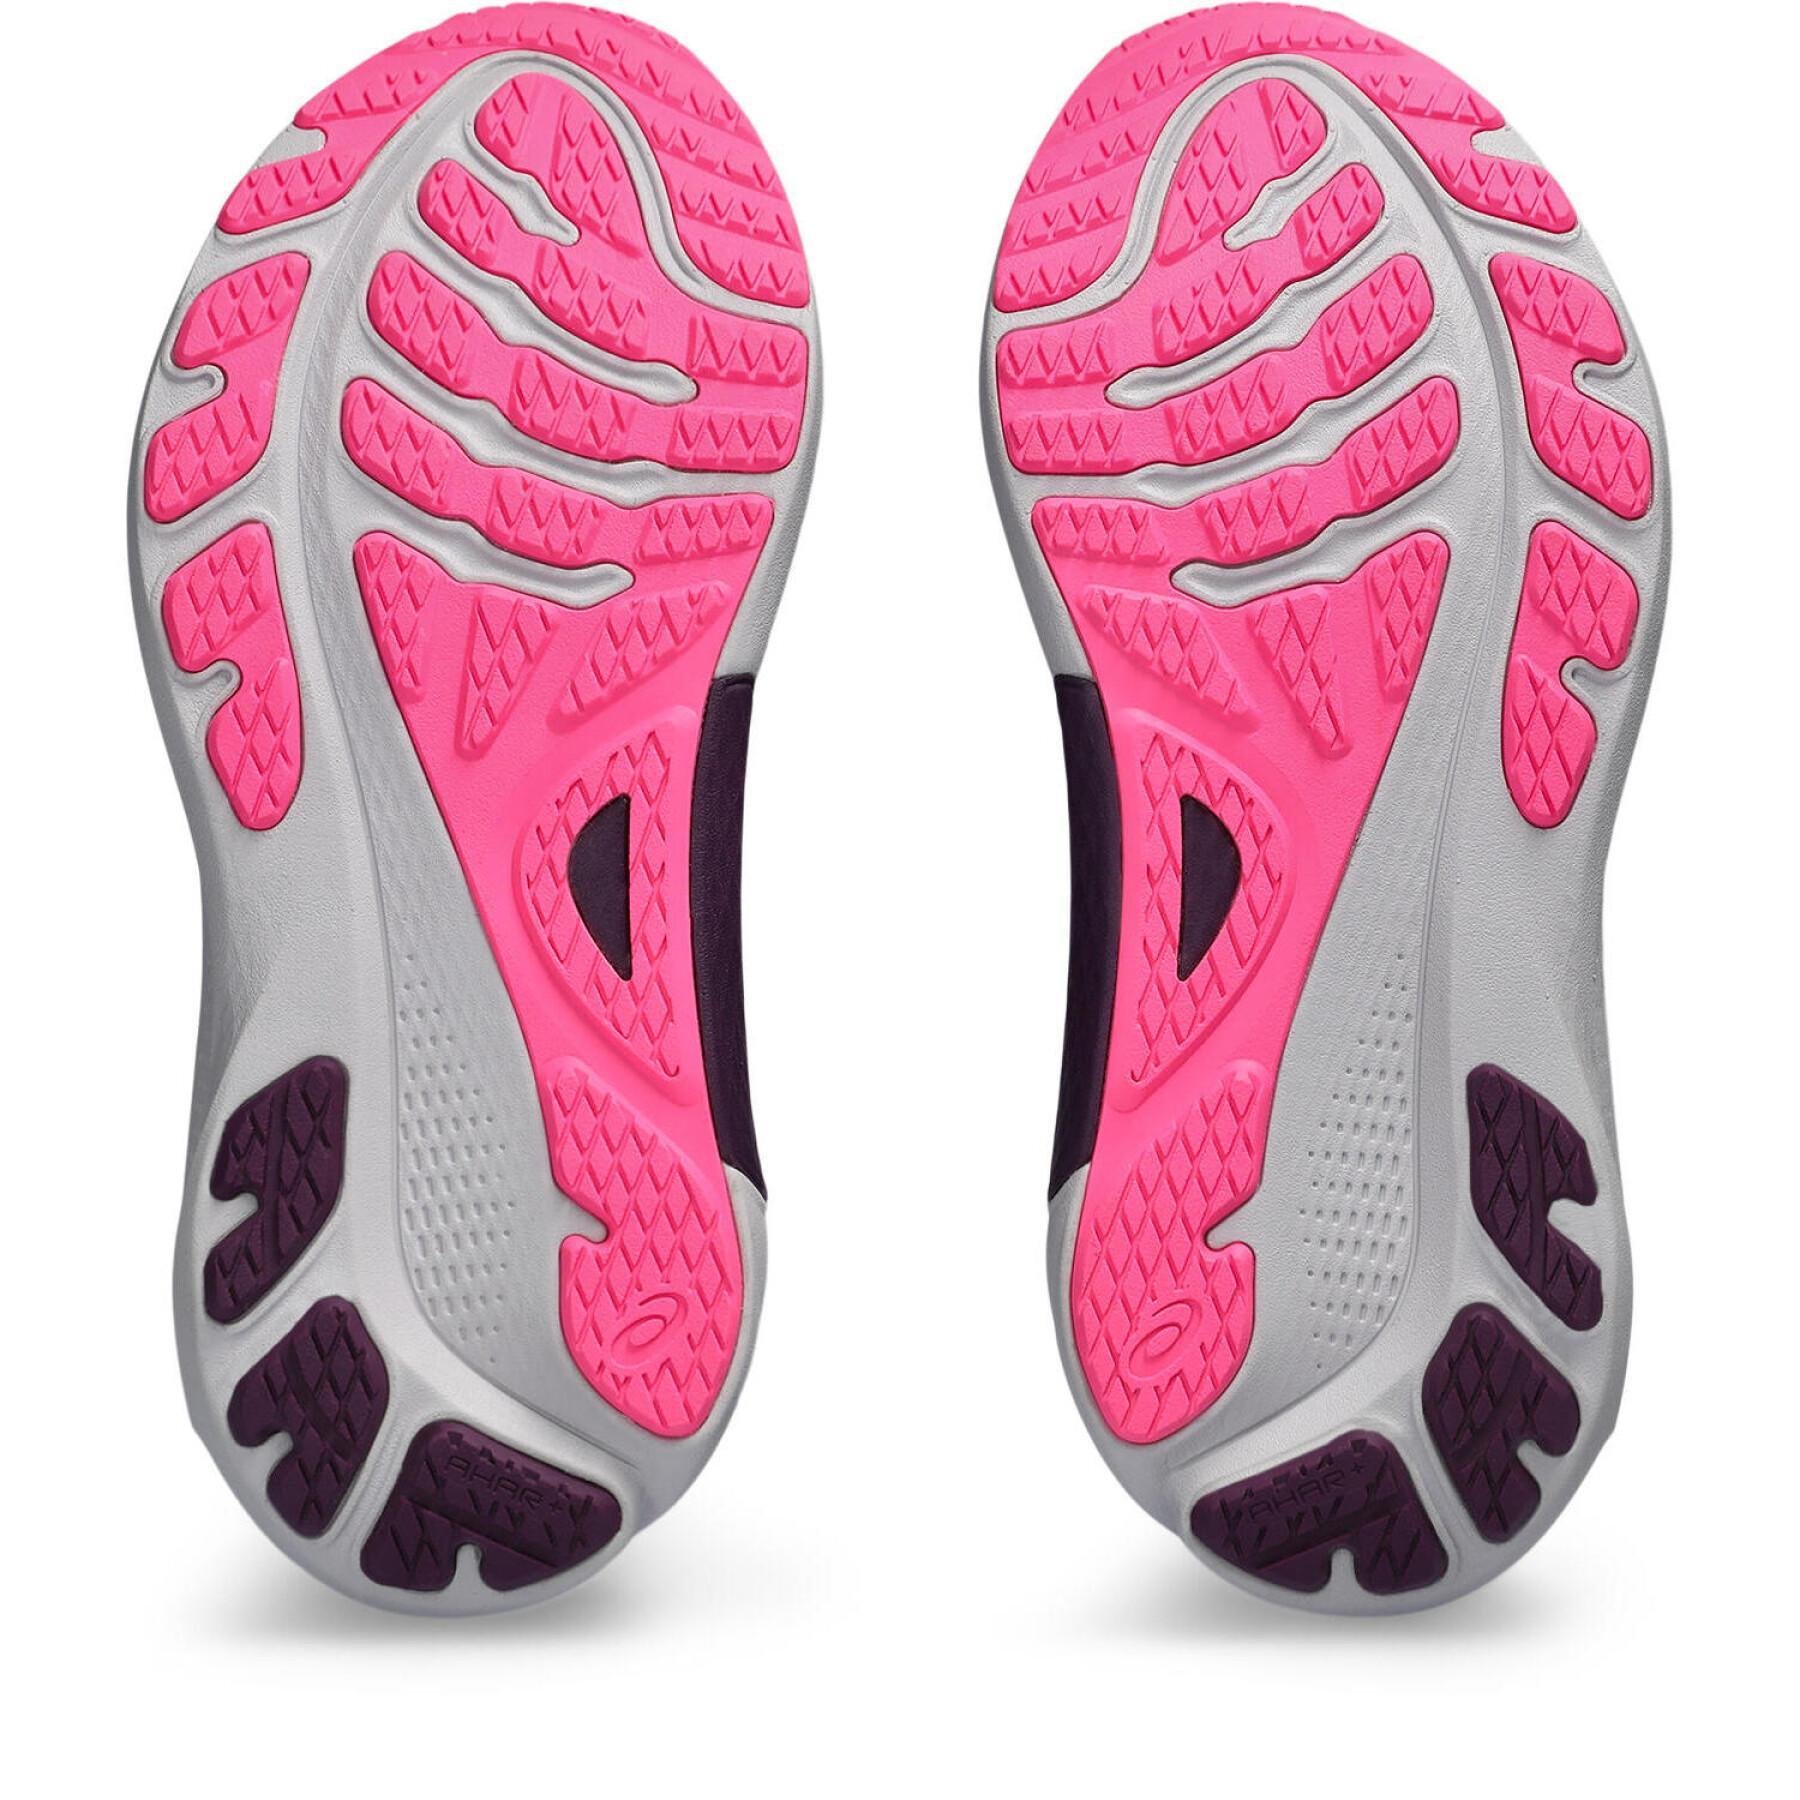 Zapatillas de running femme Asics Gel-Kayano 30